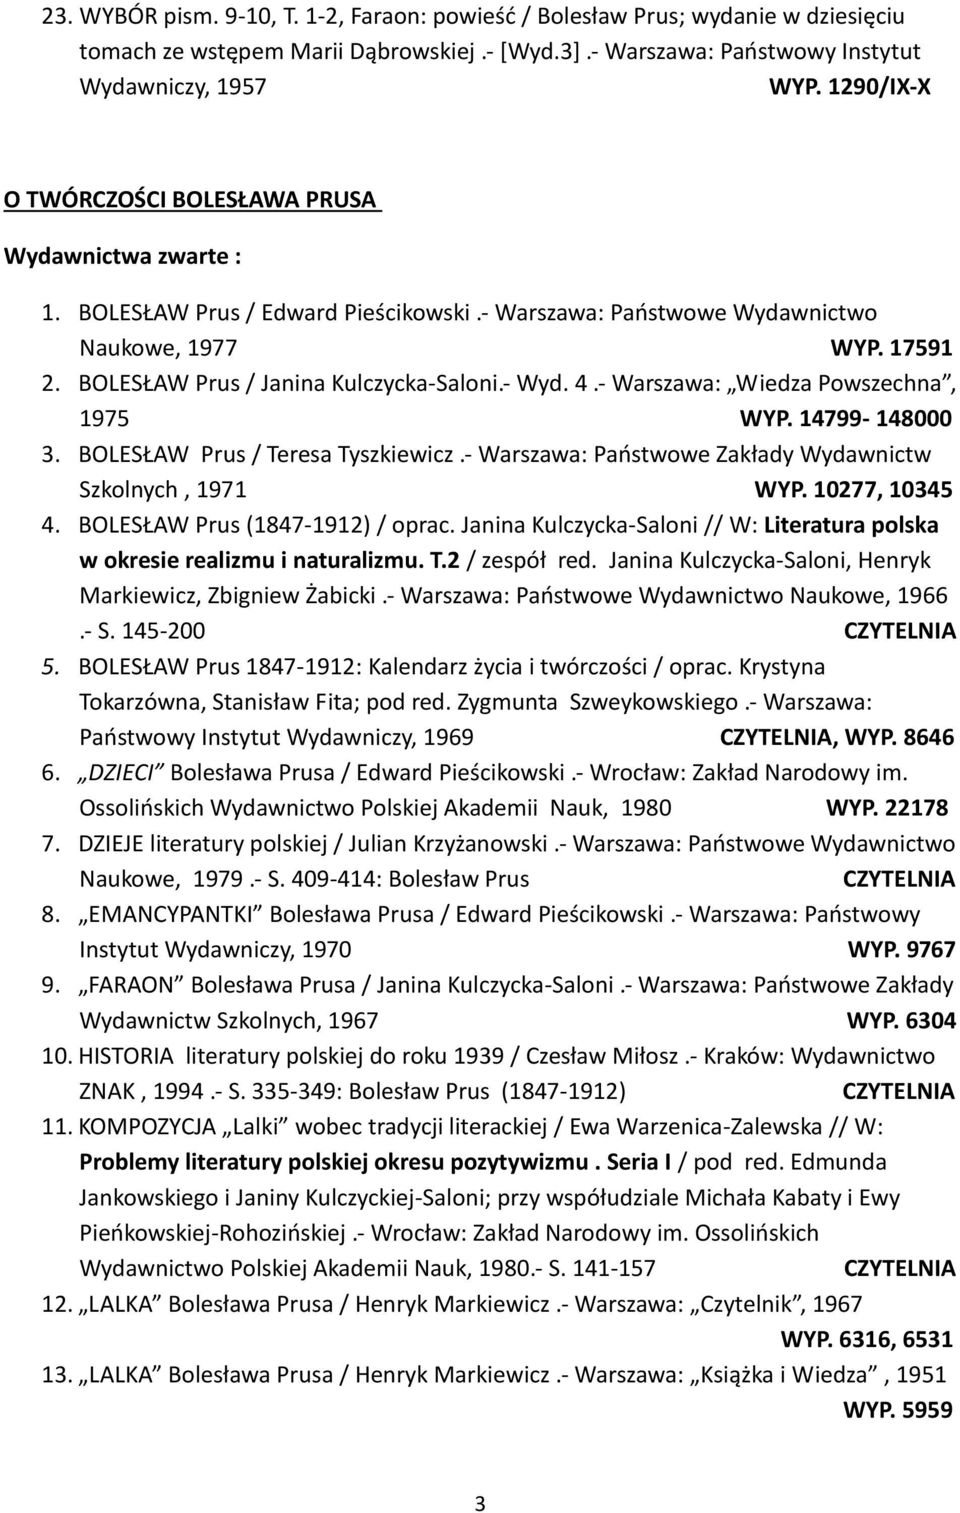 BOLESŁAW Prus / Teresa Tyszkiewicz.- Warszawa: Państwowe Zakłady Wydawnictw Szkolnych, 1971 WYP. 10277, 10345 4. BOLESŁAW Prus (1847-1912) / oprac.